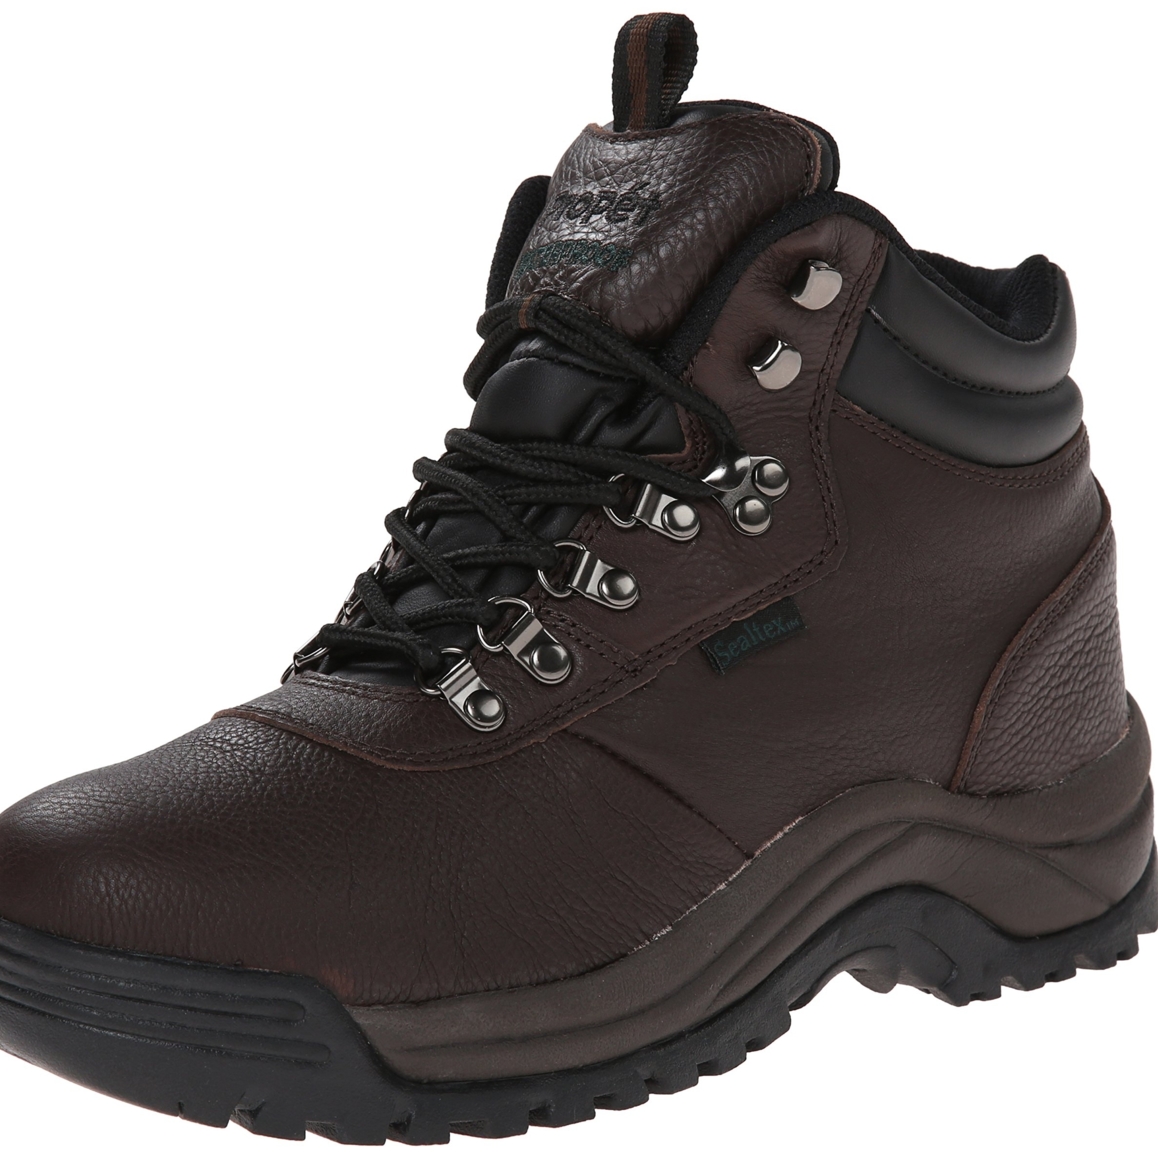 Propet Men's Cliff Walker Hiking Boot Bronco Brown - M3188BRO - BRONCO BROWN, 15-D